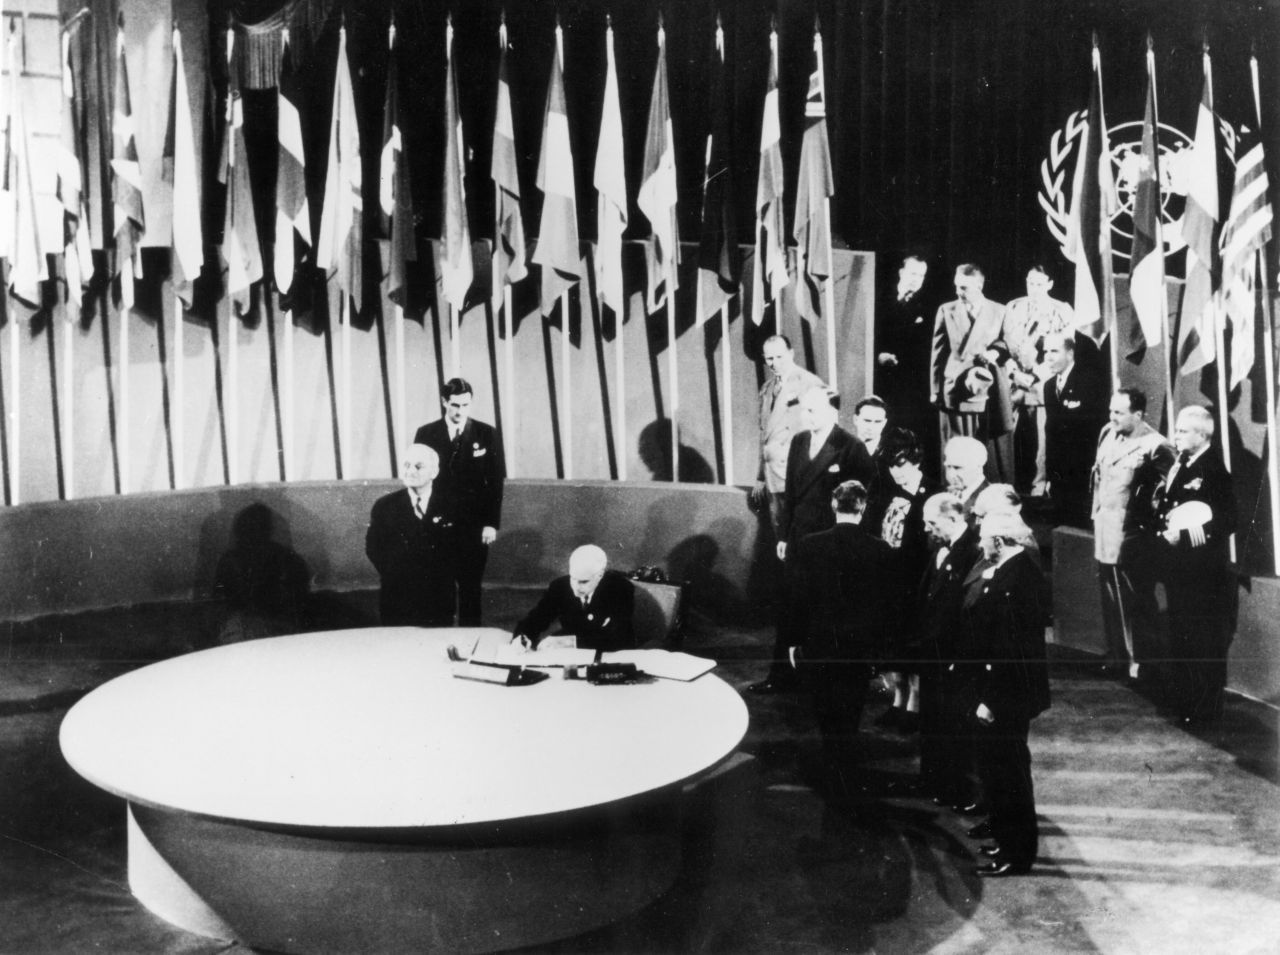 Mit dem Völkerbund (1919) und seinem 1945 gegründeten Nachfolger, der UN, entstanden erstmals Weltorganisationen, die auf dem Gewaltanwendungs-Verbot beruhen. Innerhalb der UN kann ein Sicherheitsrat darüber entscheiden, ob und wann ein militärischer Einsatz rechtmäßig erfolgt.